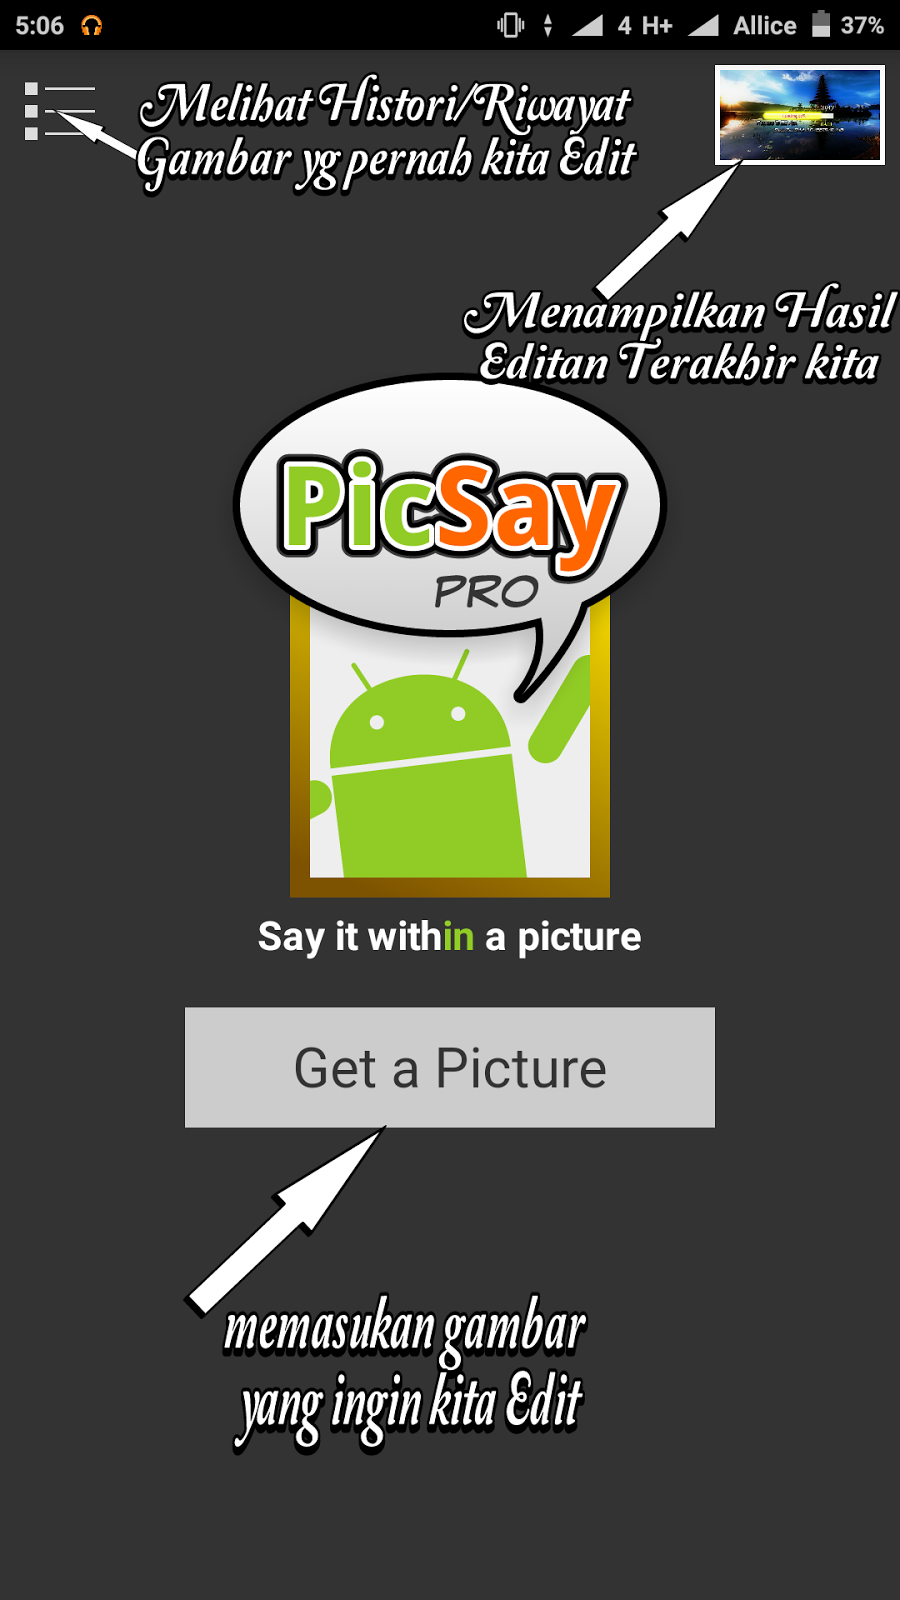 Cara menggunakan Aplikasi picsay pro Lengkap For Newbie ~ OziArt43